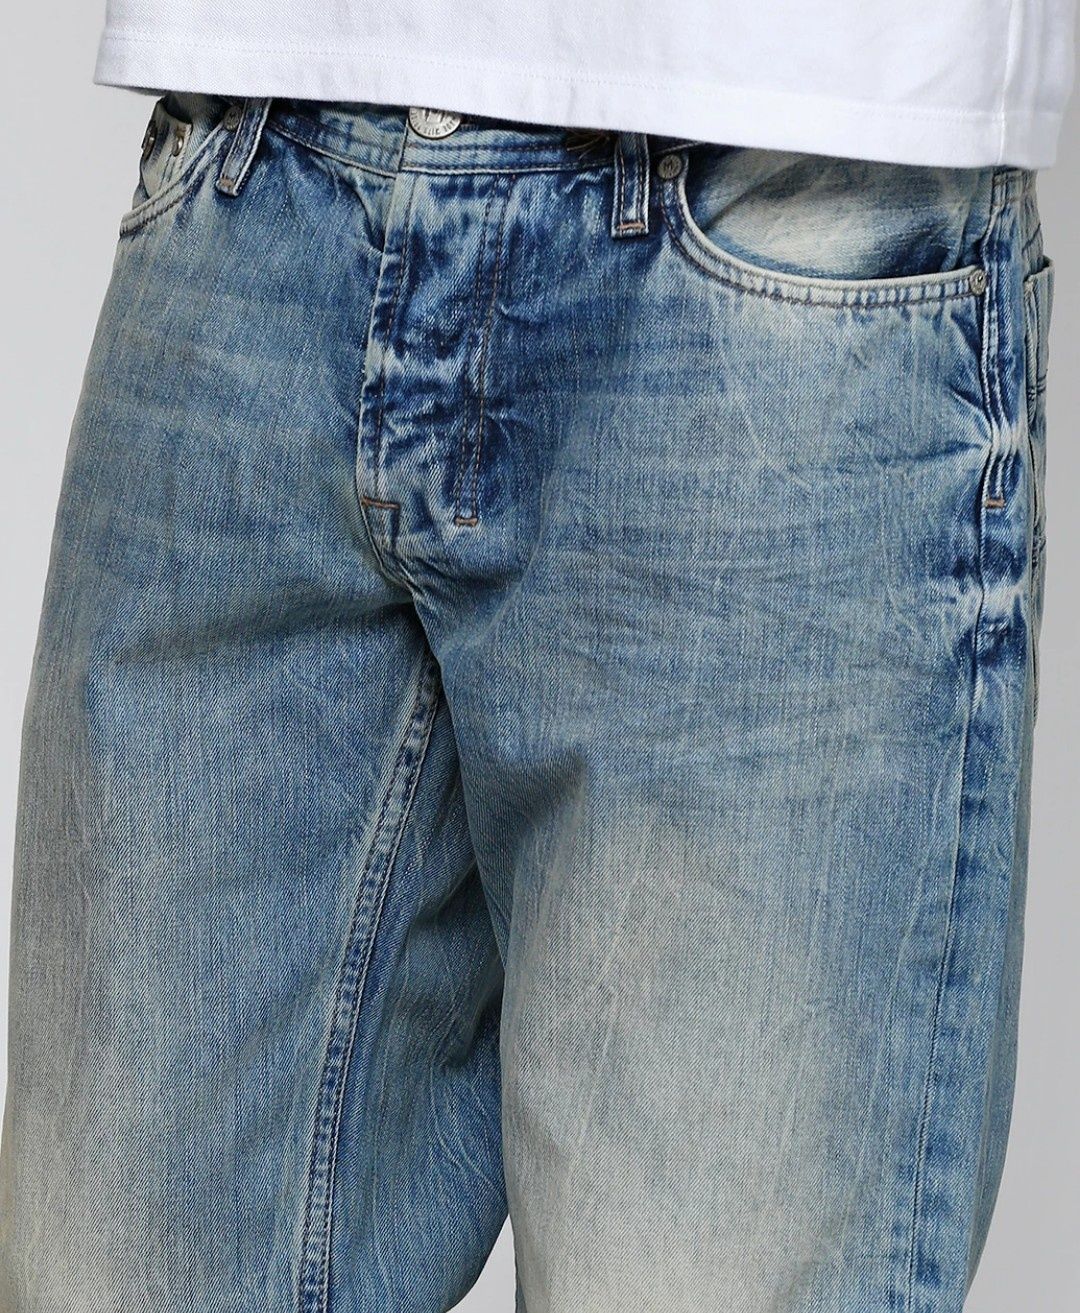 M.O.D р.54 джинсы мужские синие